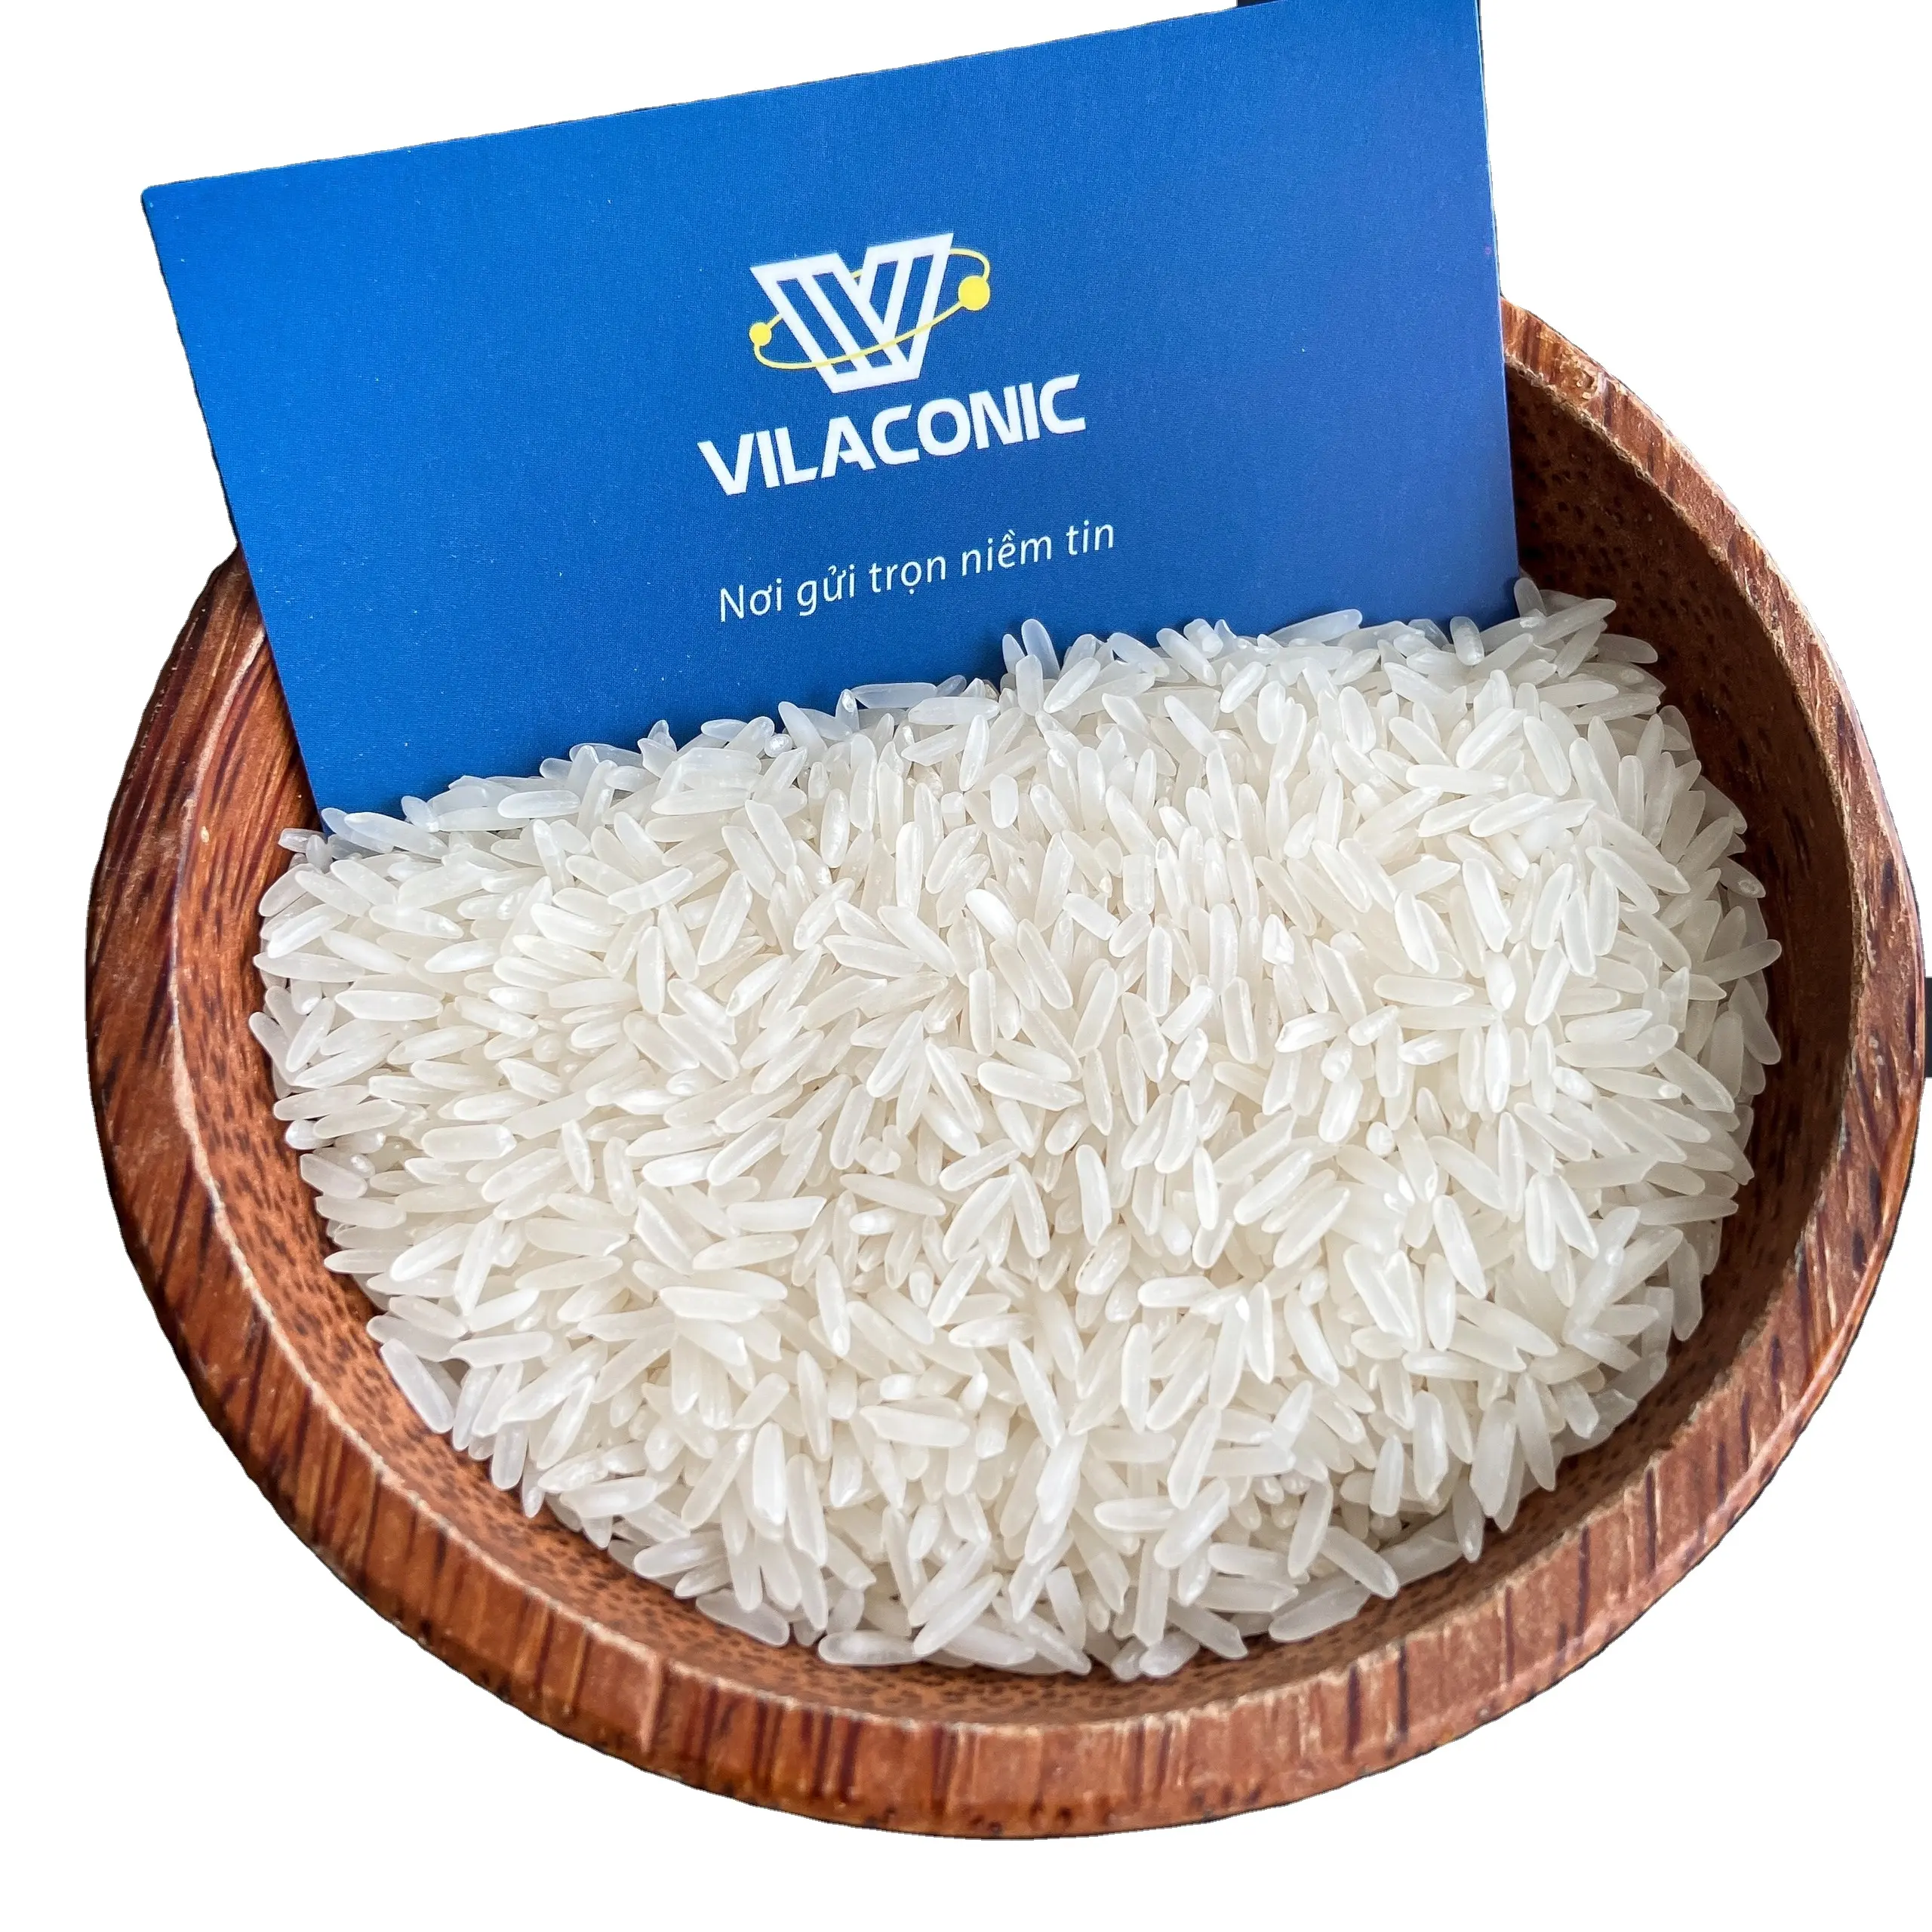 ジャスミン米サプライヤー-Vilaconicの米工場からの輸出基準 (Mr.Brian-Whatsapp: 84796855283)